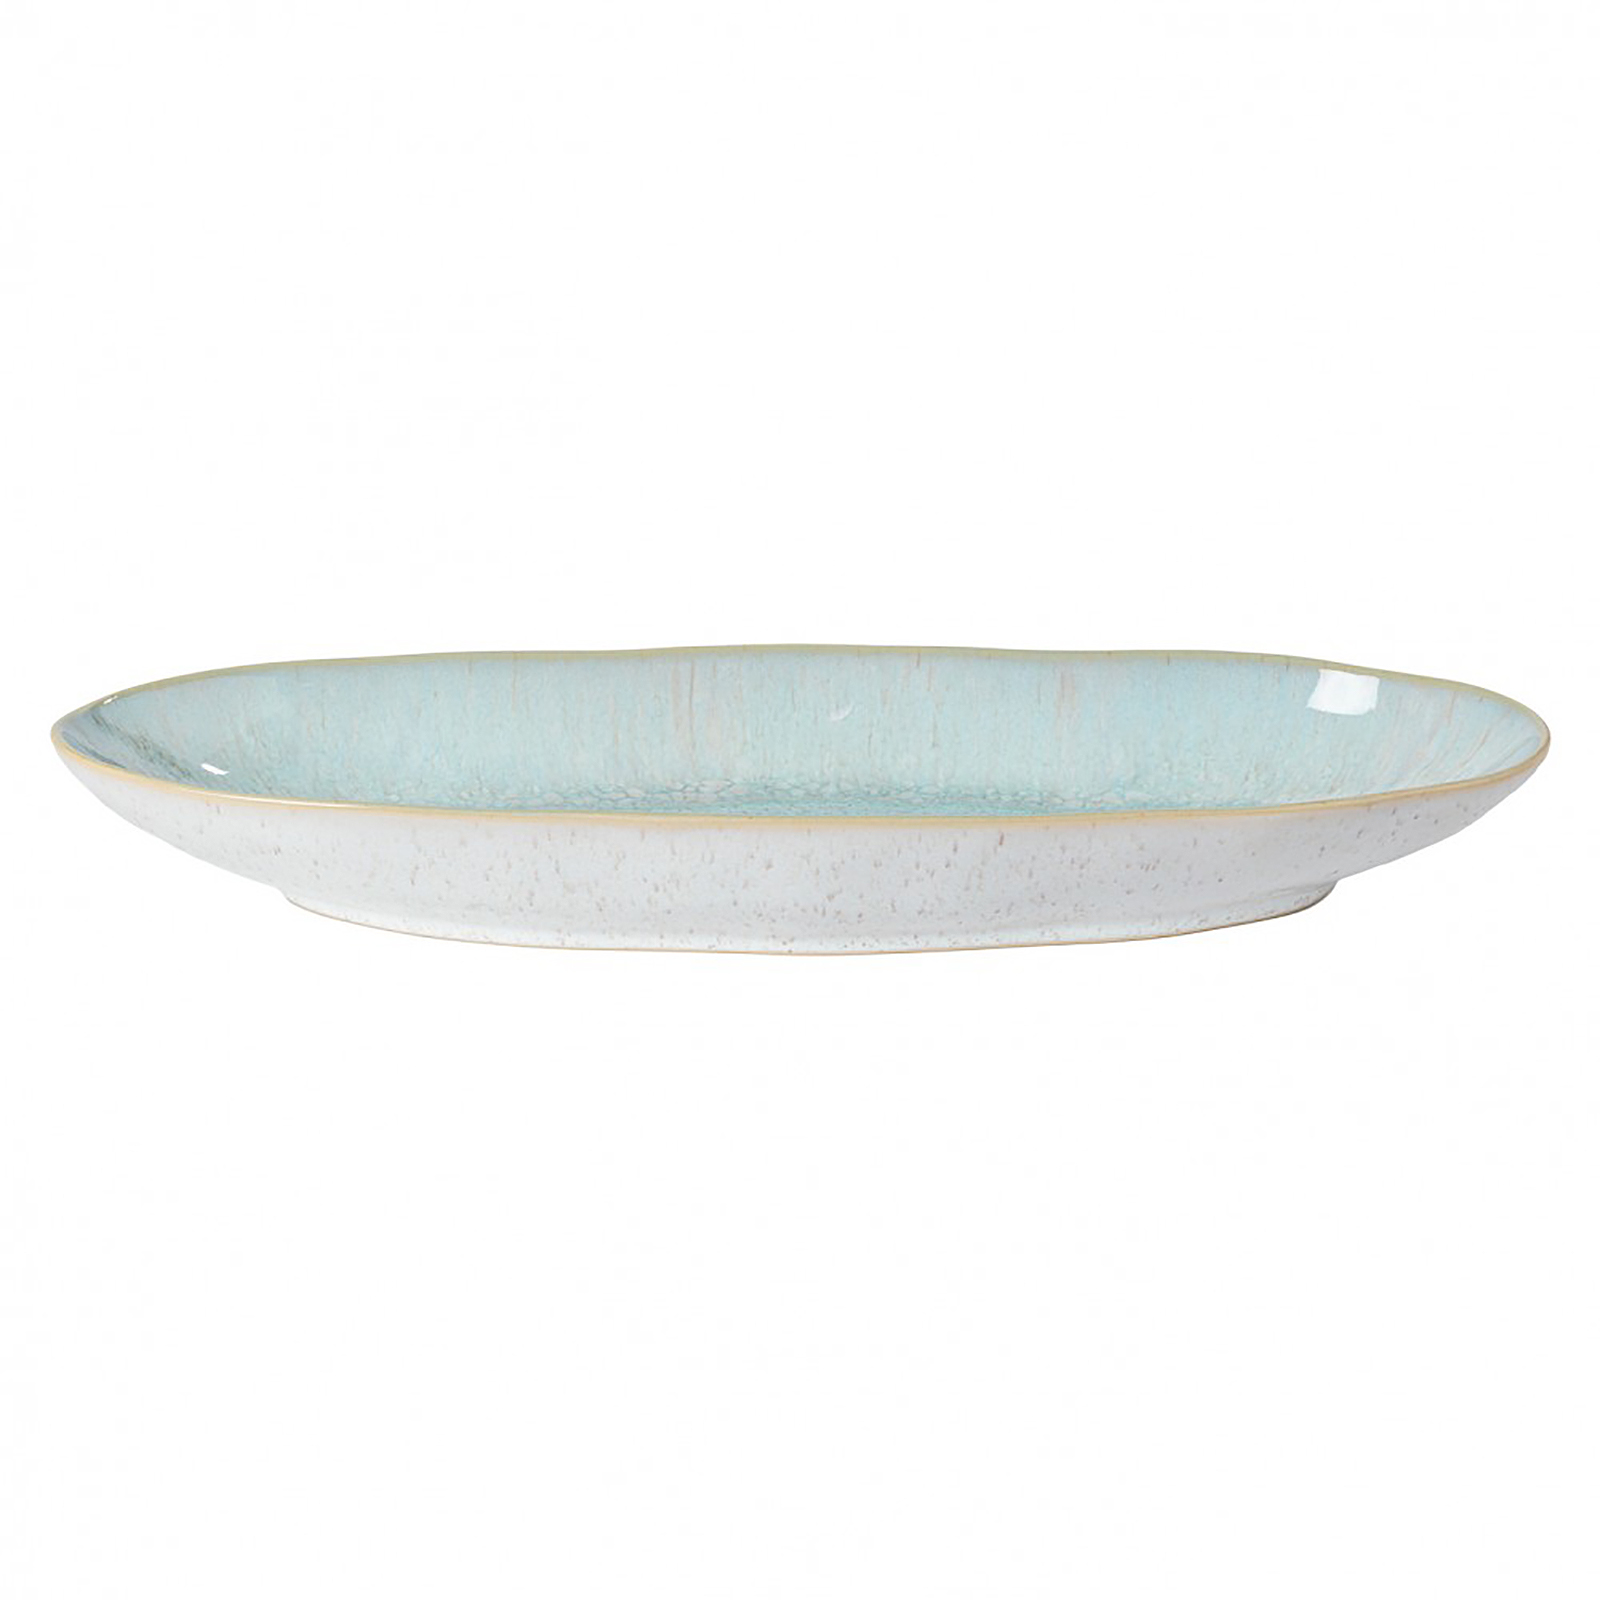 Casafina Eivissa ovale Servierplatte/Schale, innen meerblau, außen beige, gesprenkelt, 41x14x5cm